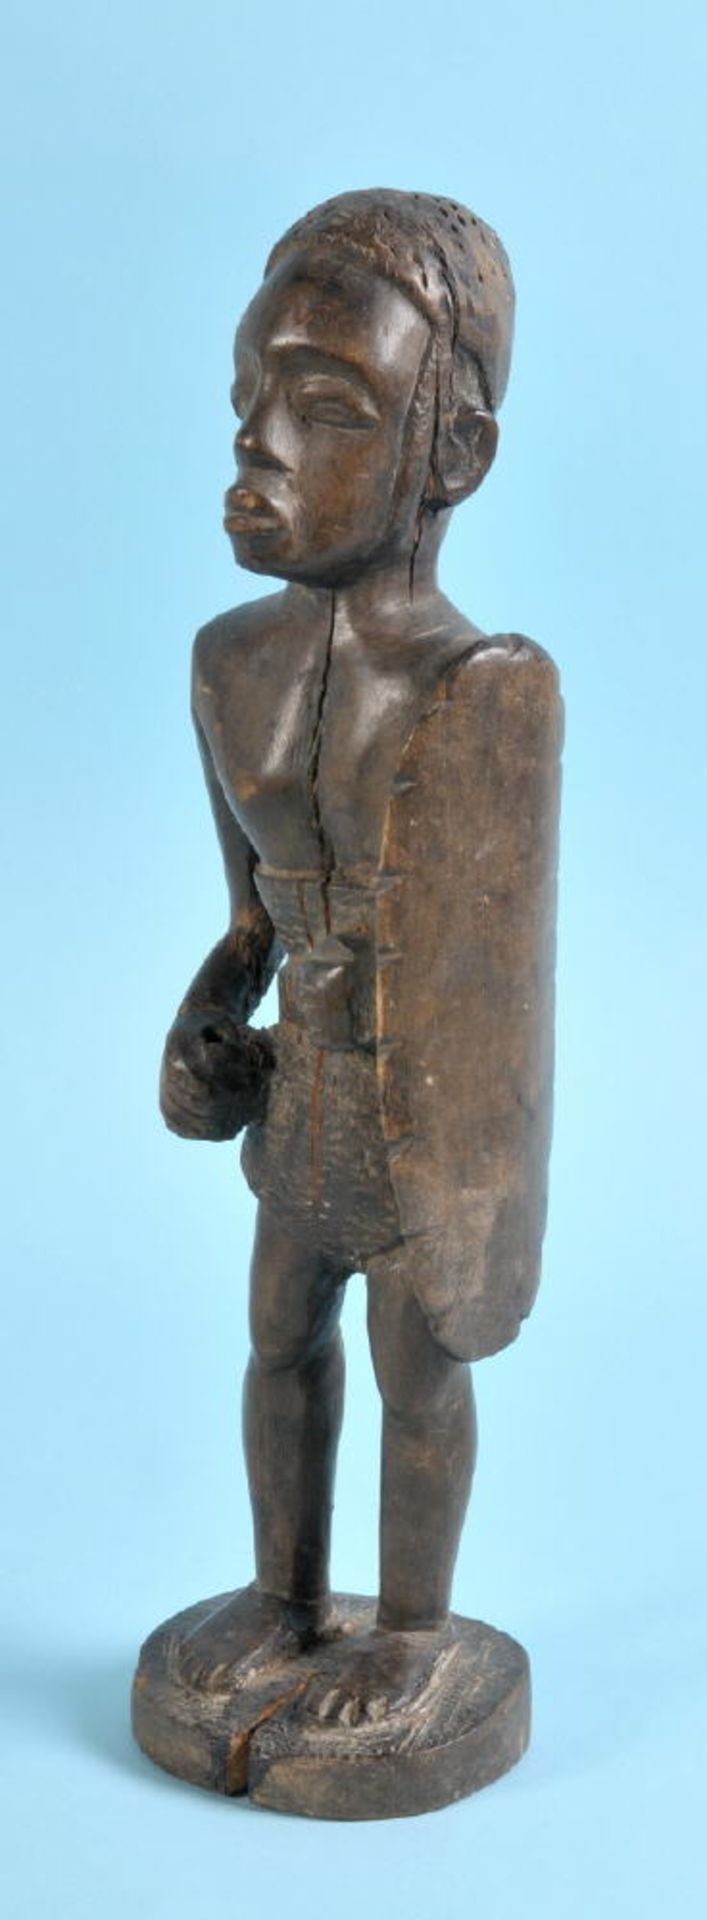 Afrikanische Kultfigur - KriegerHolz, braun gebeizt, auf Sockel, H= 38 cm, Spannungsriss